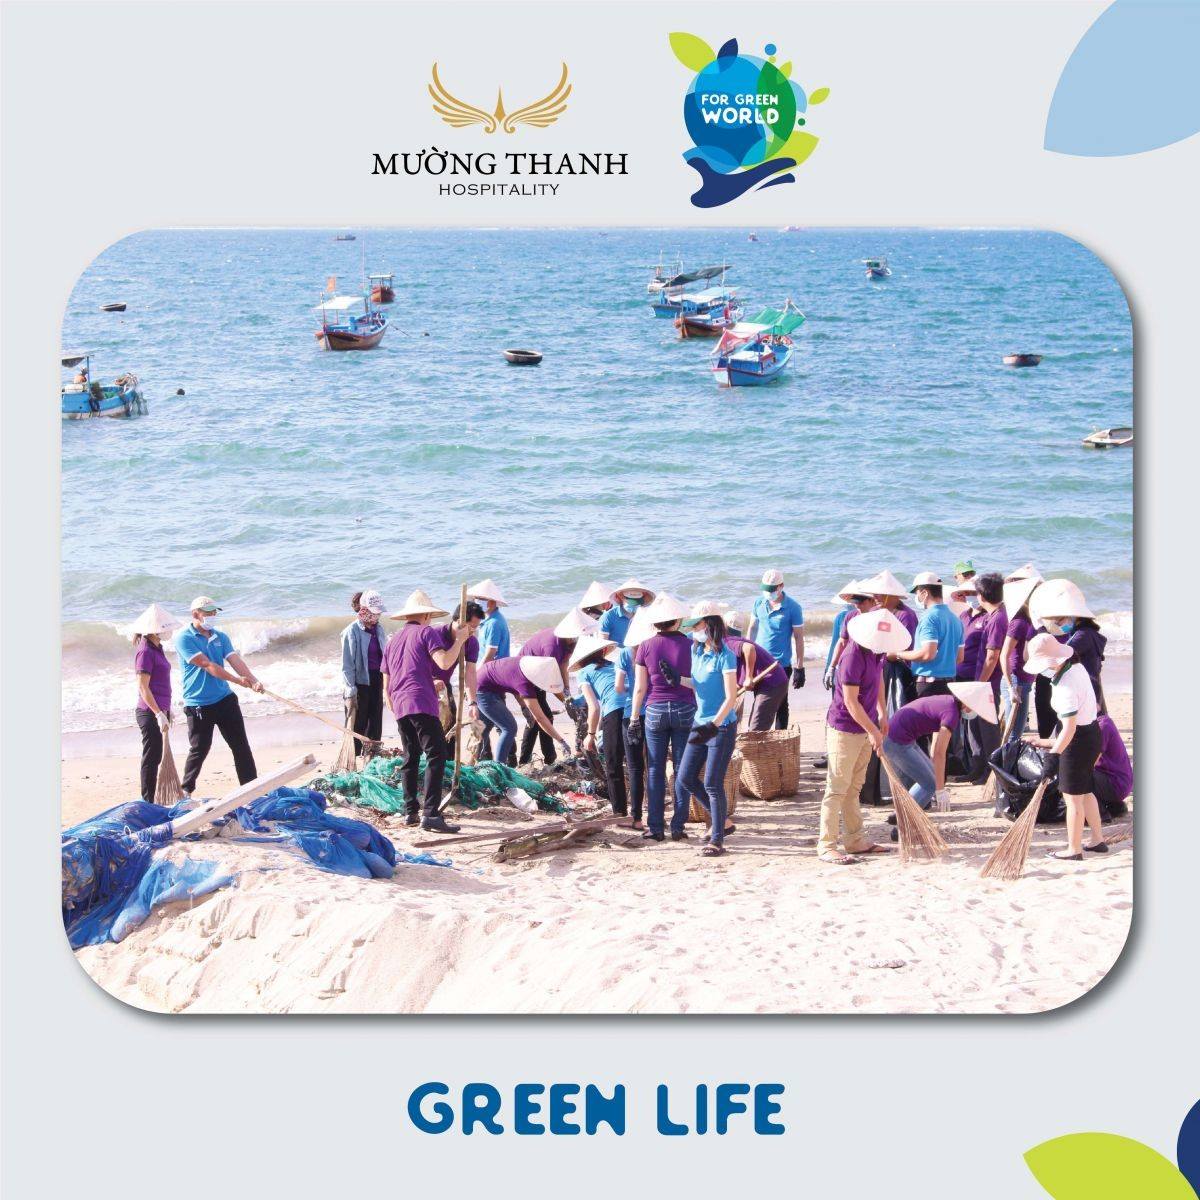 Cán bộ nhân viên Tập đoàn Mường Thanh dọn rác bãi biển trong chương trình “For Green World – Cho một trái đất xanh”.